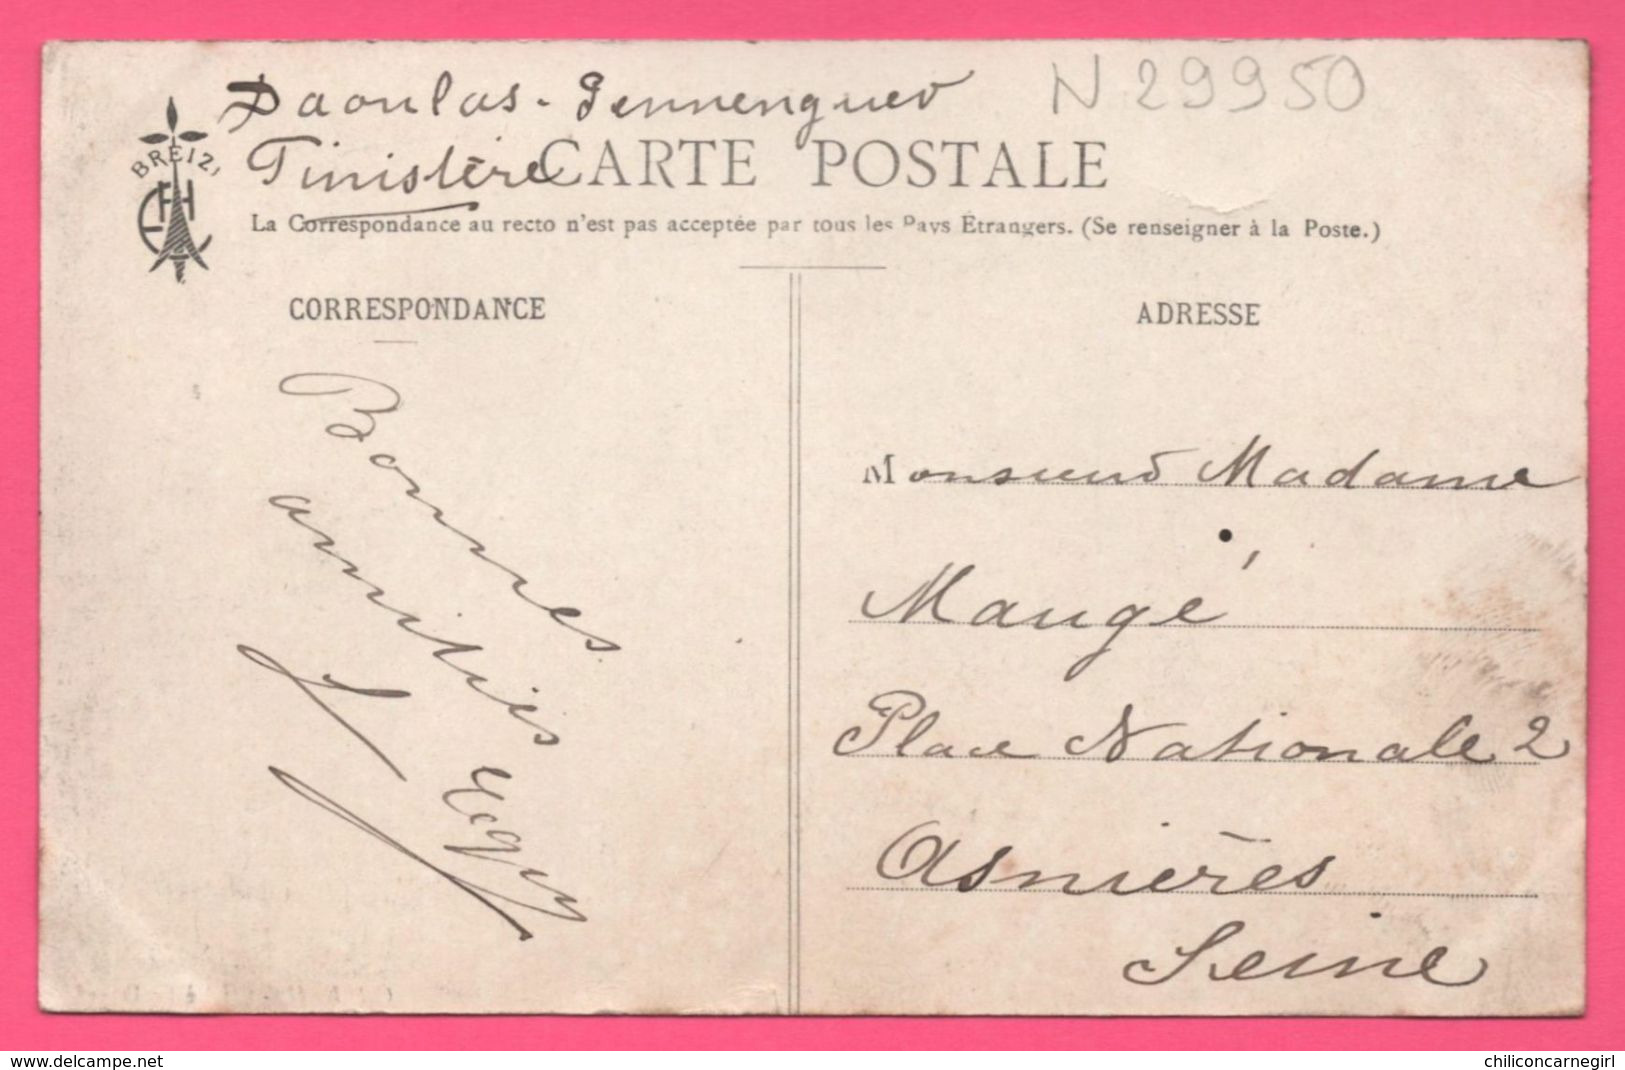 Daoulas - Route De Plougastel - Animée - Enfants - Cycliste - Collection E.H. - Cliché LE DOARE - 1910 - Daoulas